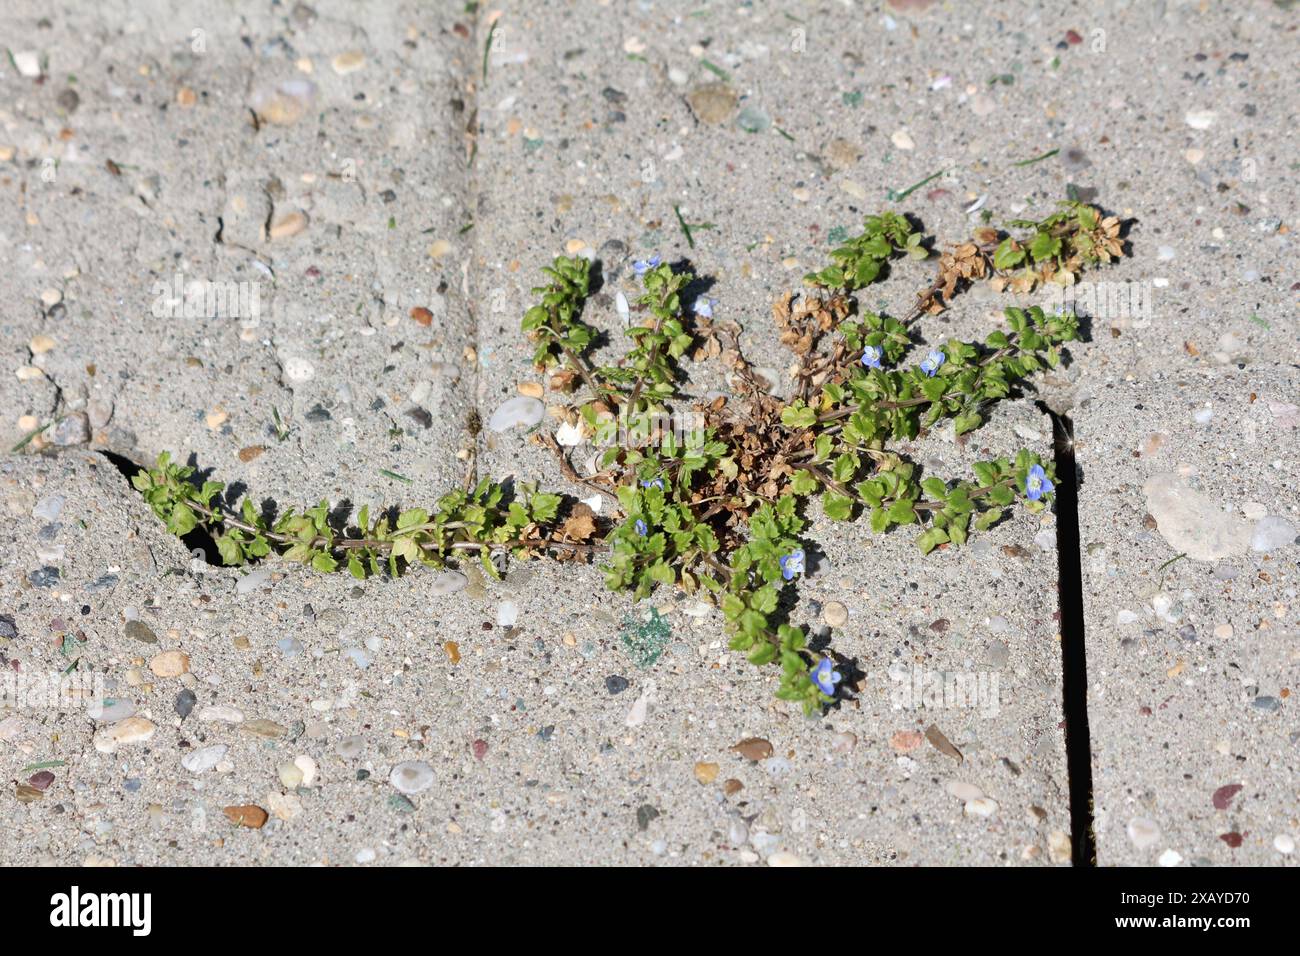 Persische speedwell- oder Veronica persica-Pflanze mit schwachen Stängeln, die eine dichte Bodendecke bilden, und himmelblaue zygomorphe Blüten, die zwischen Steinplatten wachsen Stockfoto